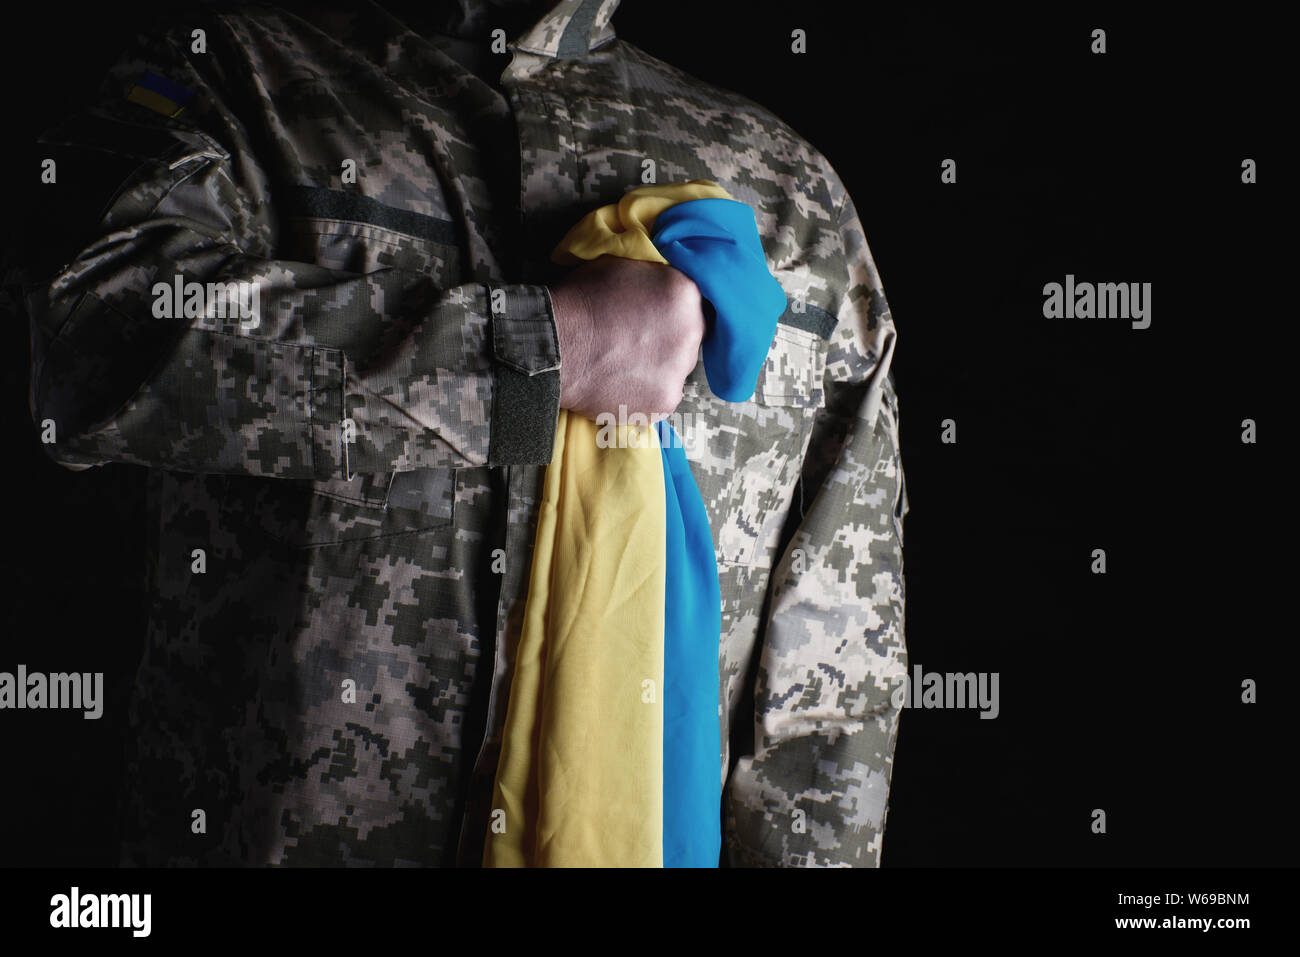 Ukrainische Soldaten hält in seiner Hand das gelb-blaue Flagge des Staates, er presste seine Hand an seine Brust, Konzept der Erinnerung an die toten Soldaten Stockfoto